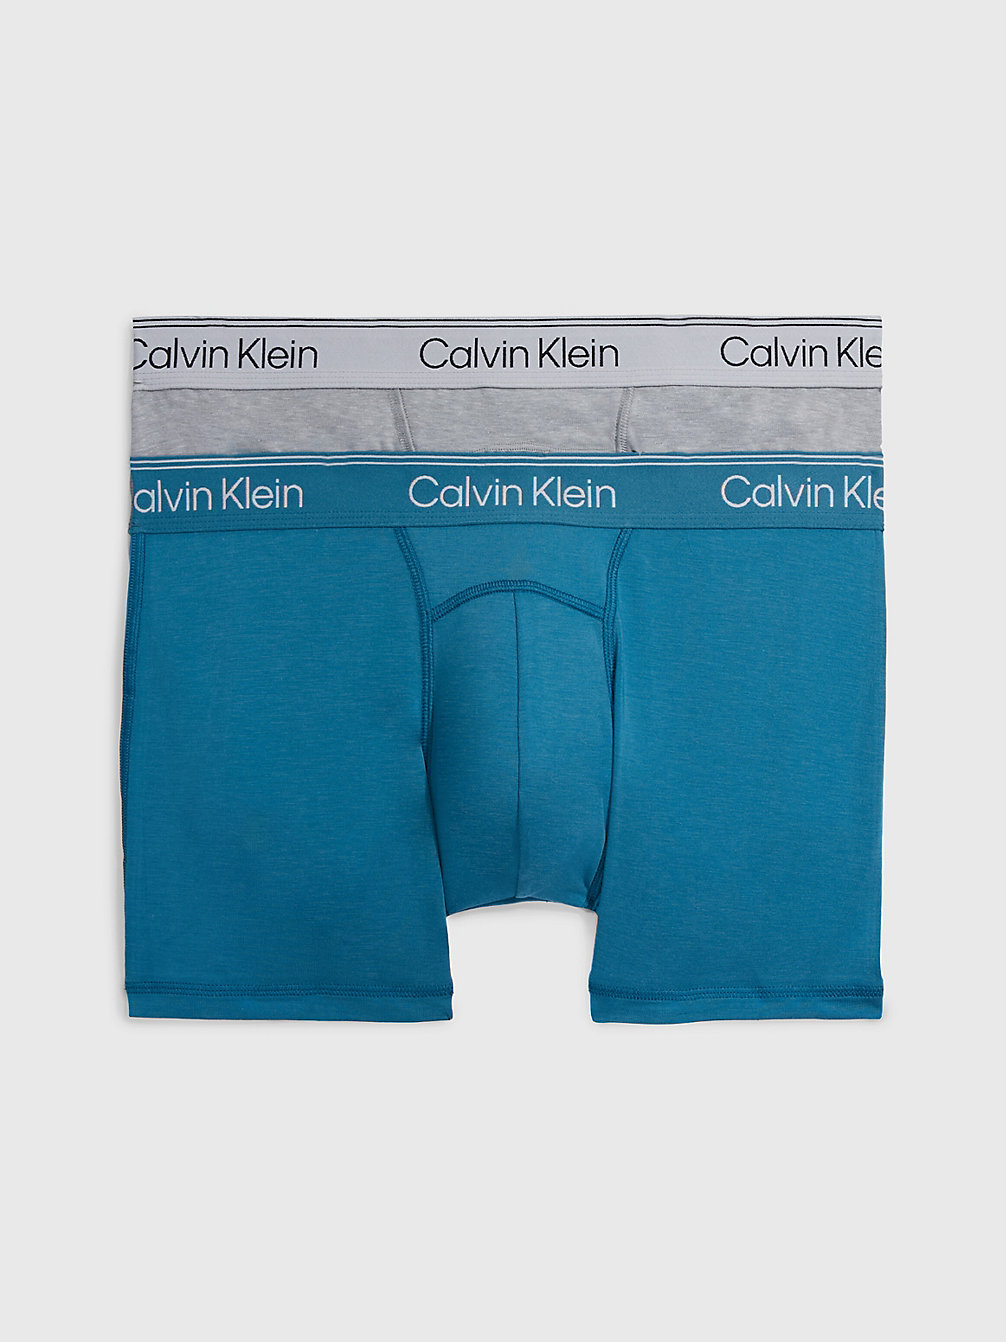 MIDNIGHT, ATHLETIC GREY HEATHER > 2er-Pack Shorts - Athletic Cotton > undefined Herren - Calvin Klein